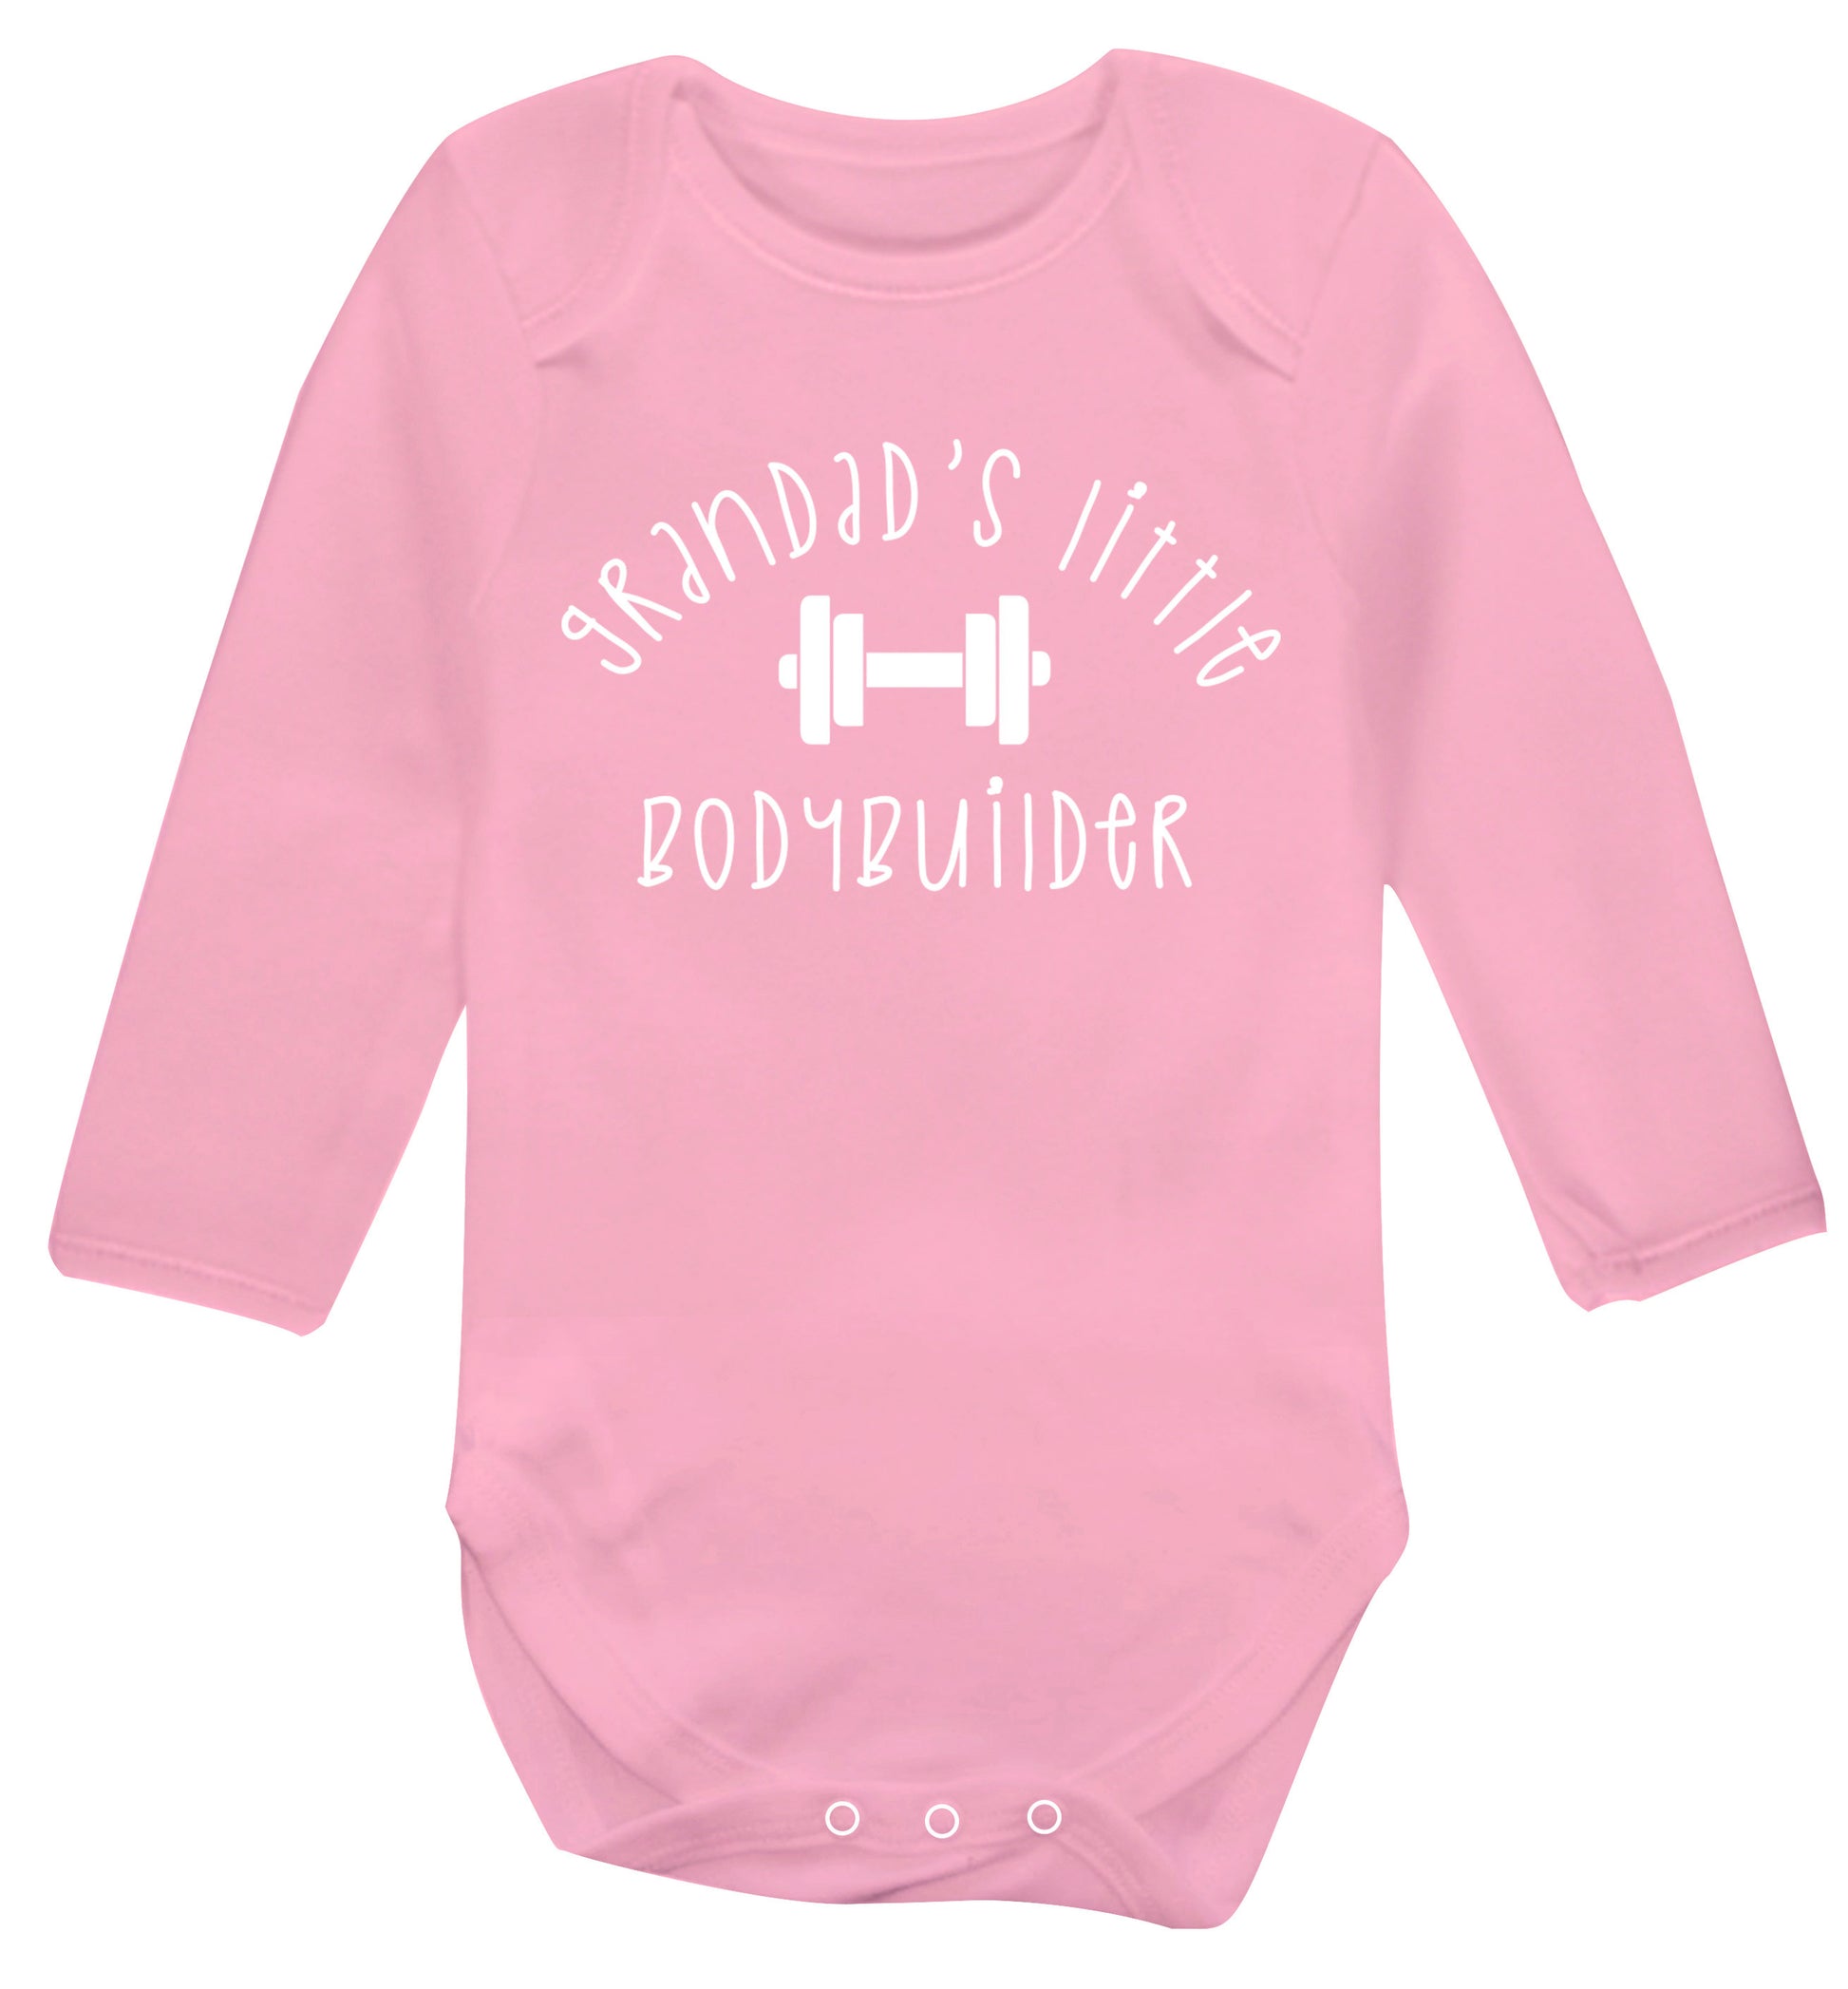 Grandad's little bodybuilder Baby Vest long sleeved pale pink 6-12 months